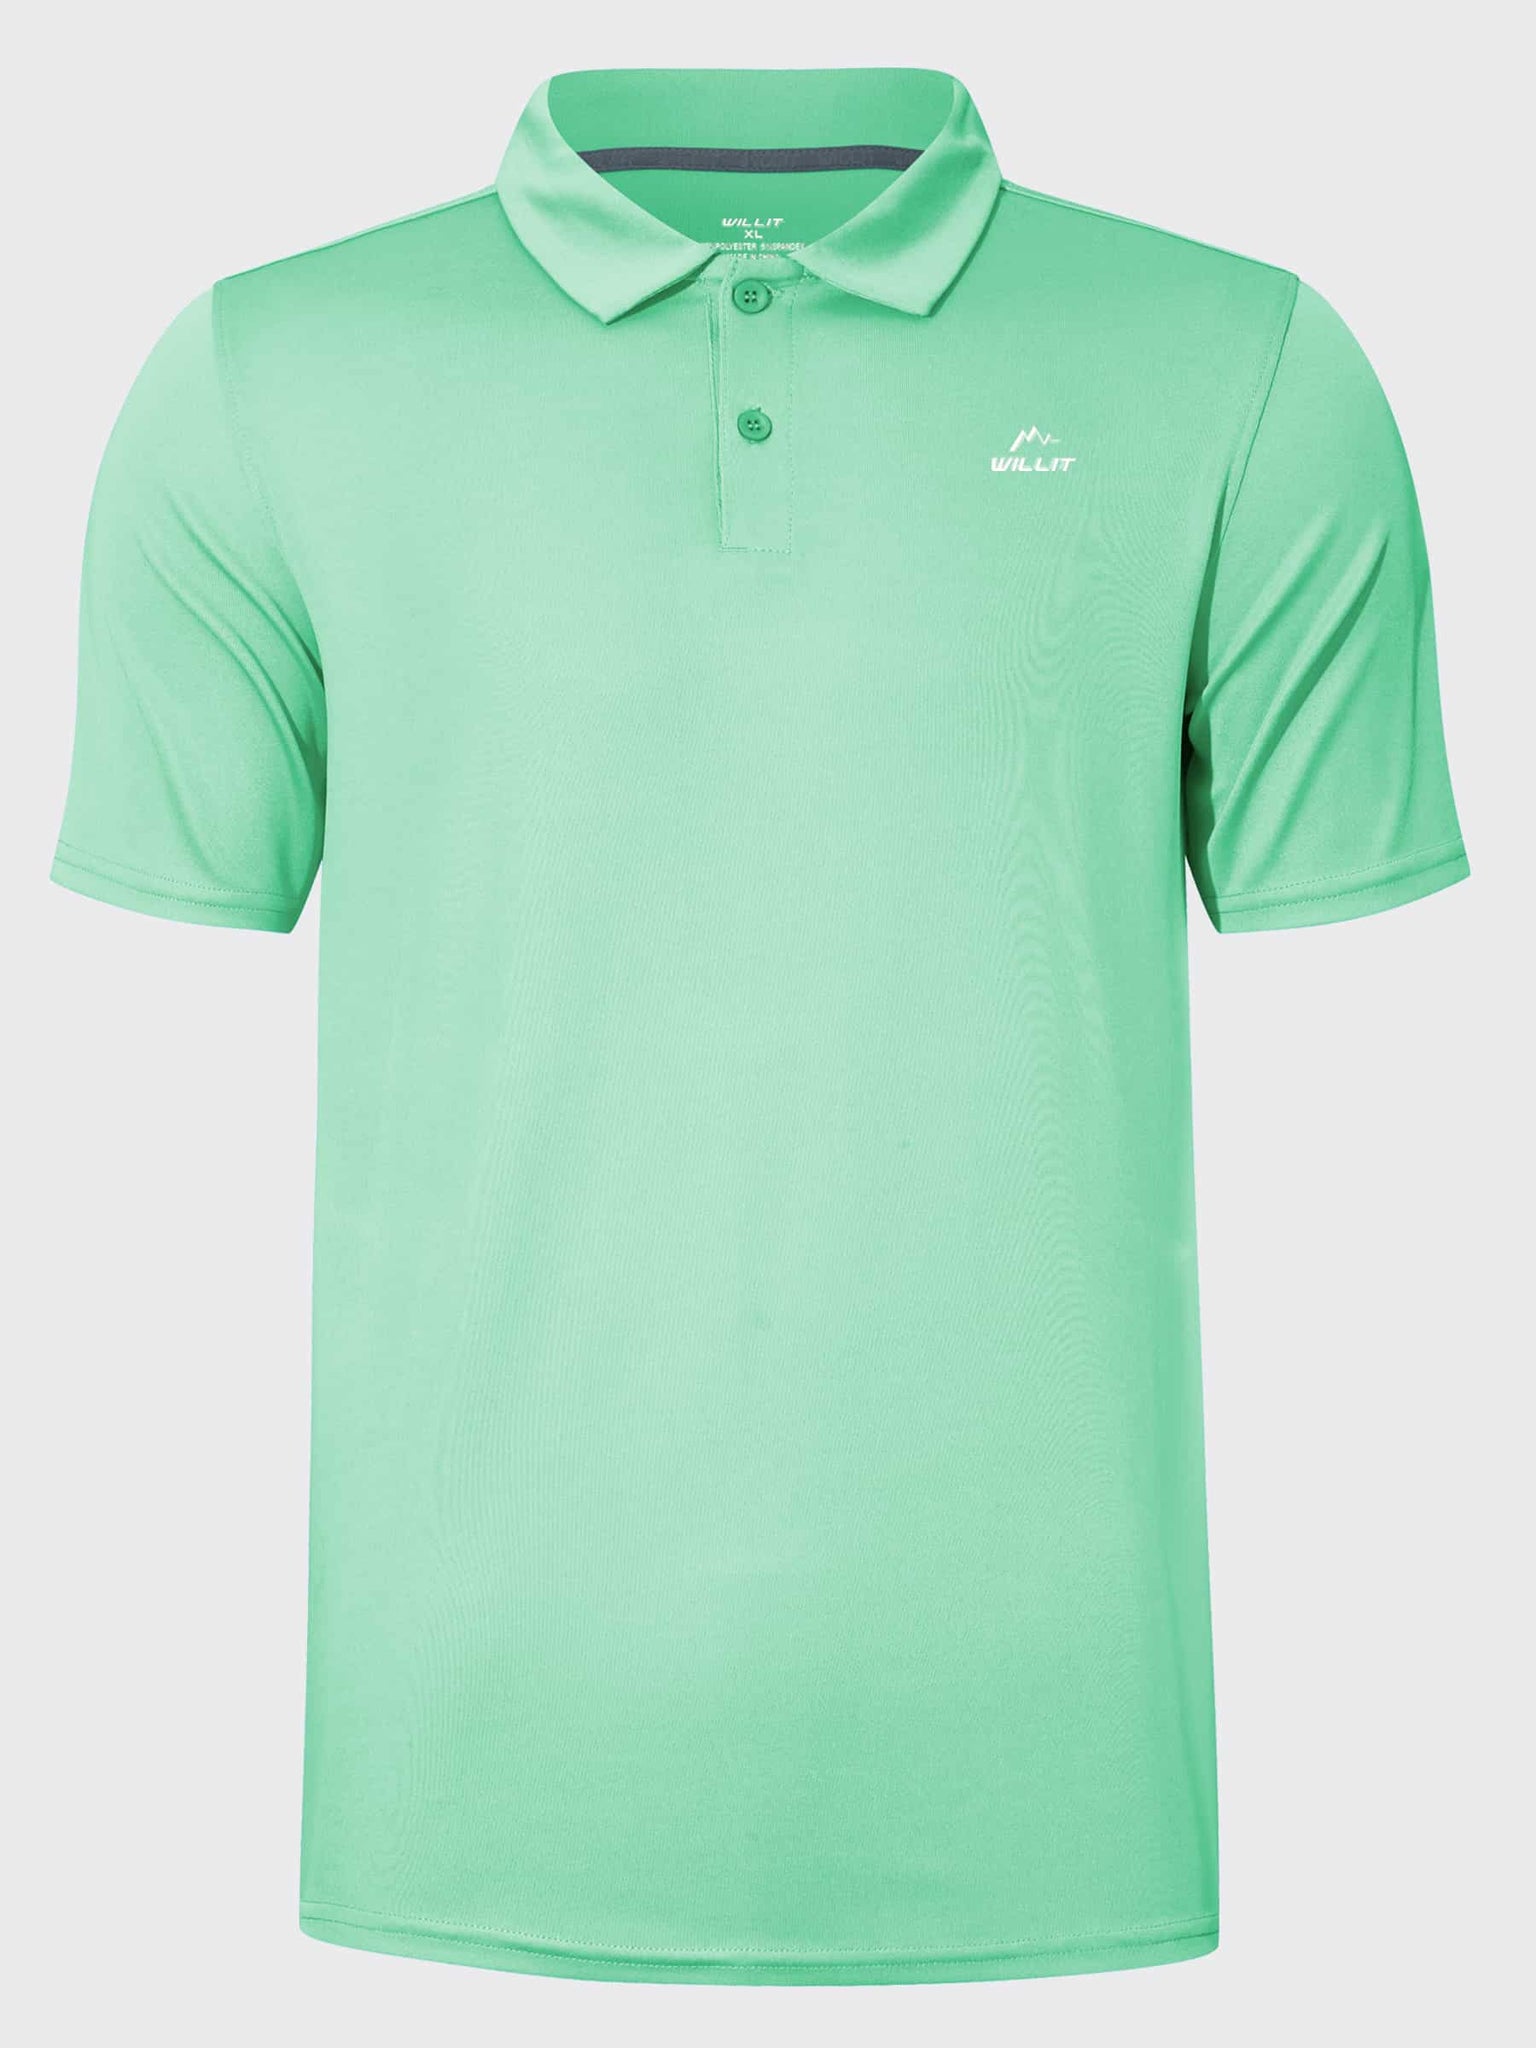 Youth Golf Polo Sun Shirts_LightGreen_laydown2